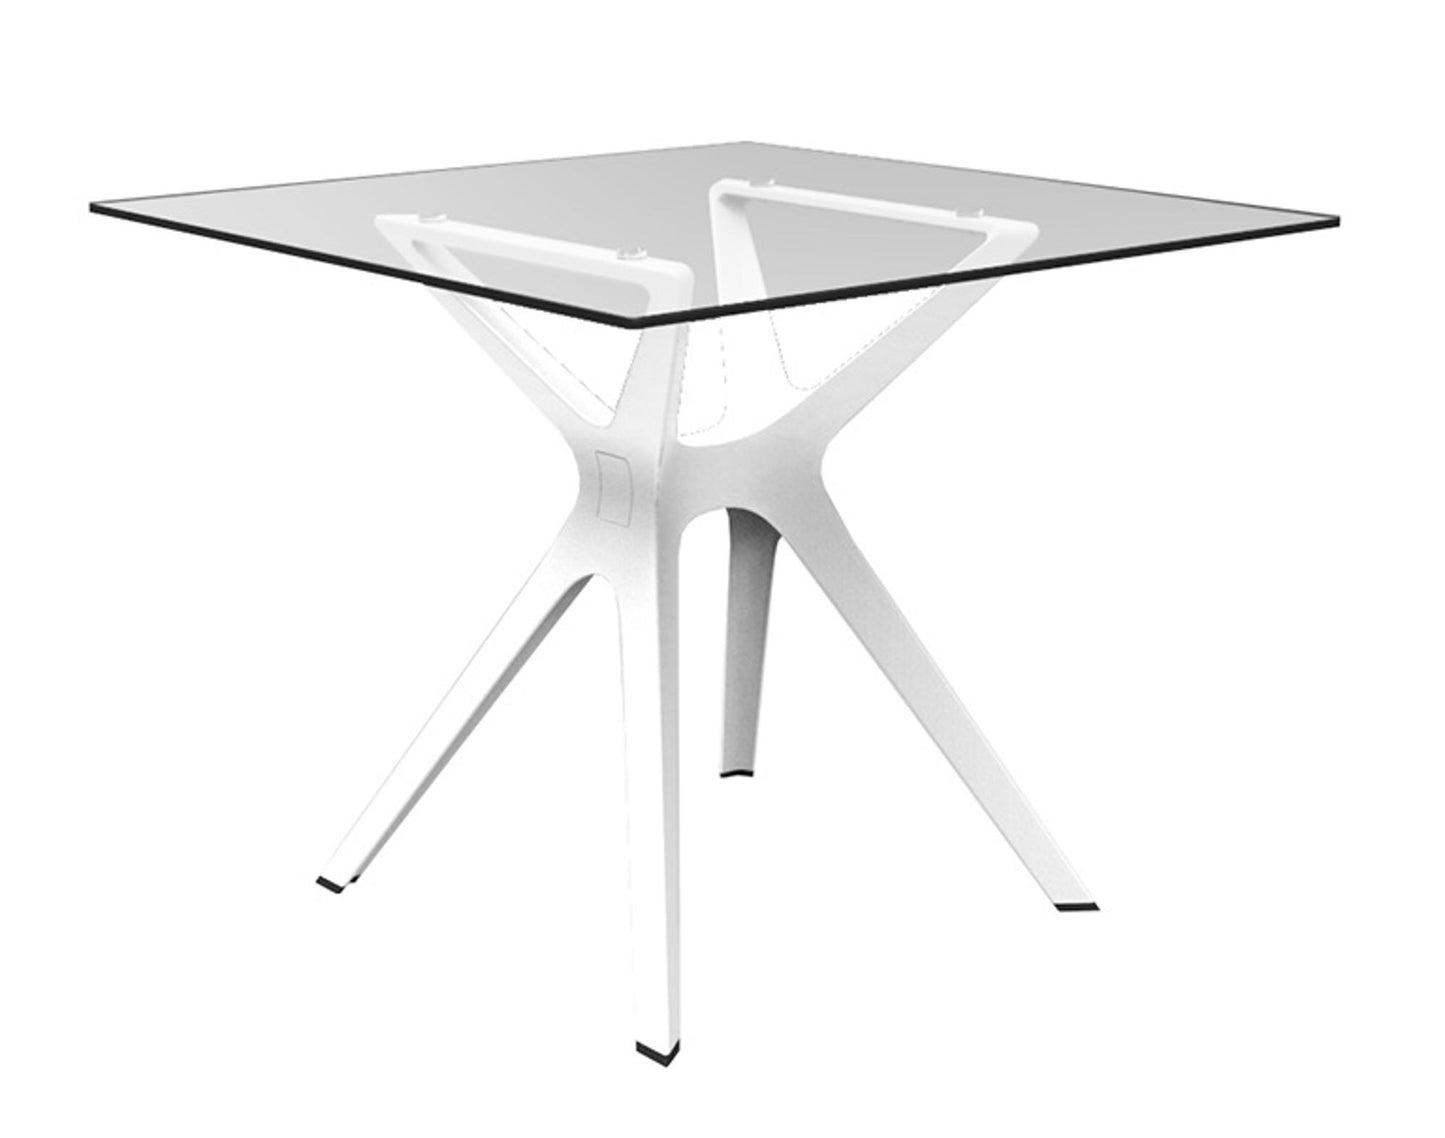 Resol vela s mesa cuadrada interior, exterior 90x90 pie blanco - tablero cristal